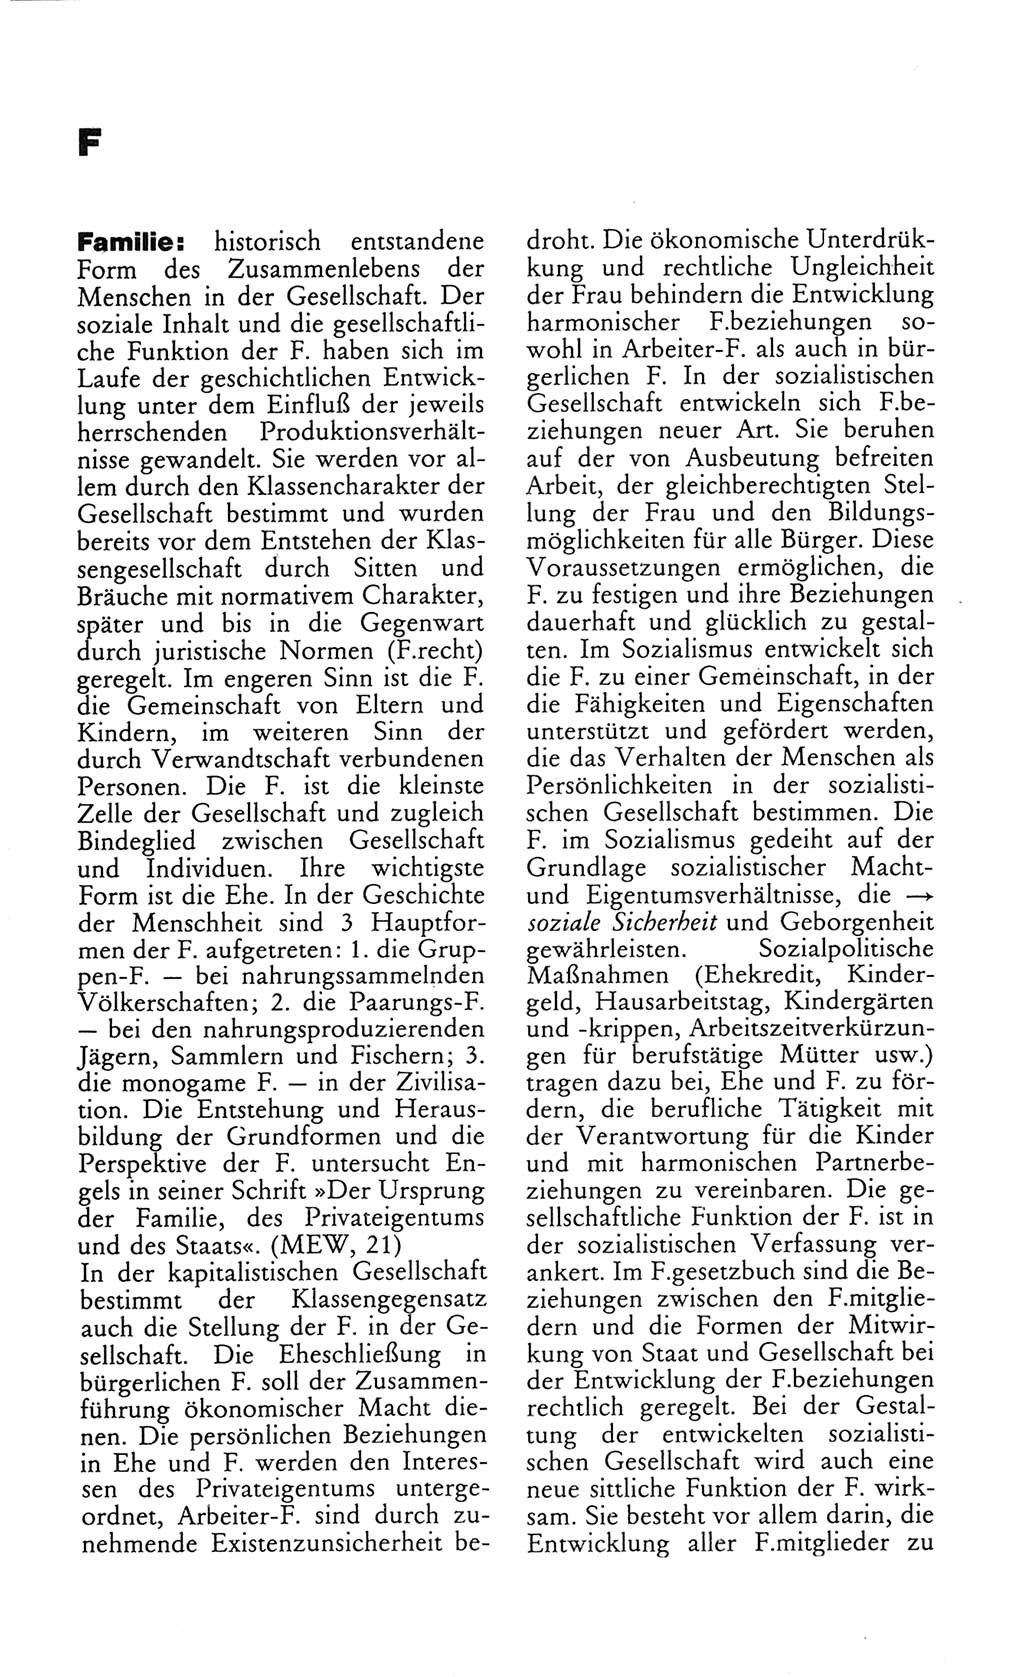 Wörterbuch des wissenschaftlichen Kommunismus [Deutsche Demokratische Republik (DDR)] 1982, Seite 98 (Wb. wiss. Komm. DDR 1982, S. 98)